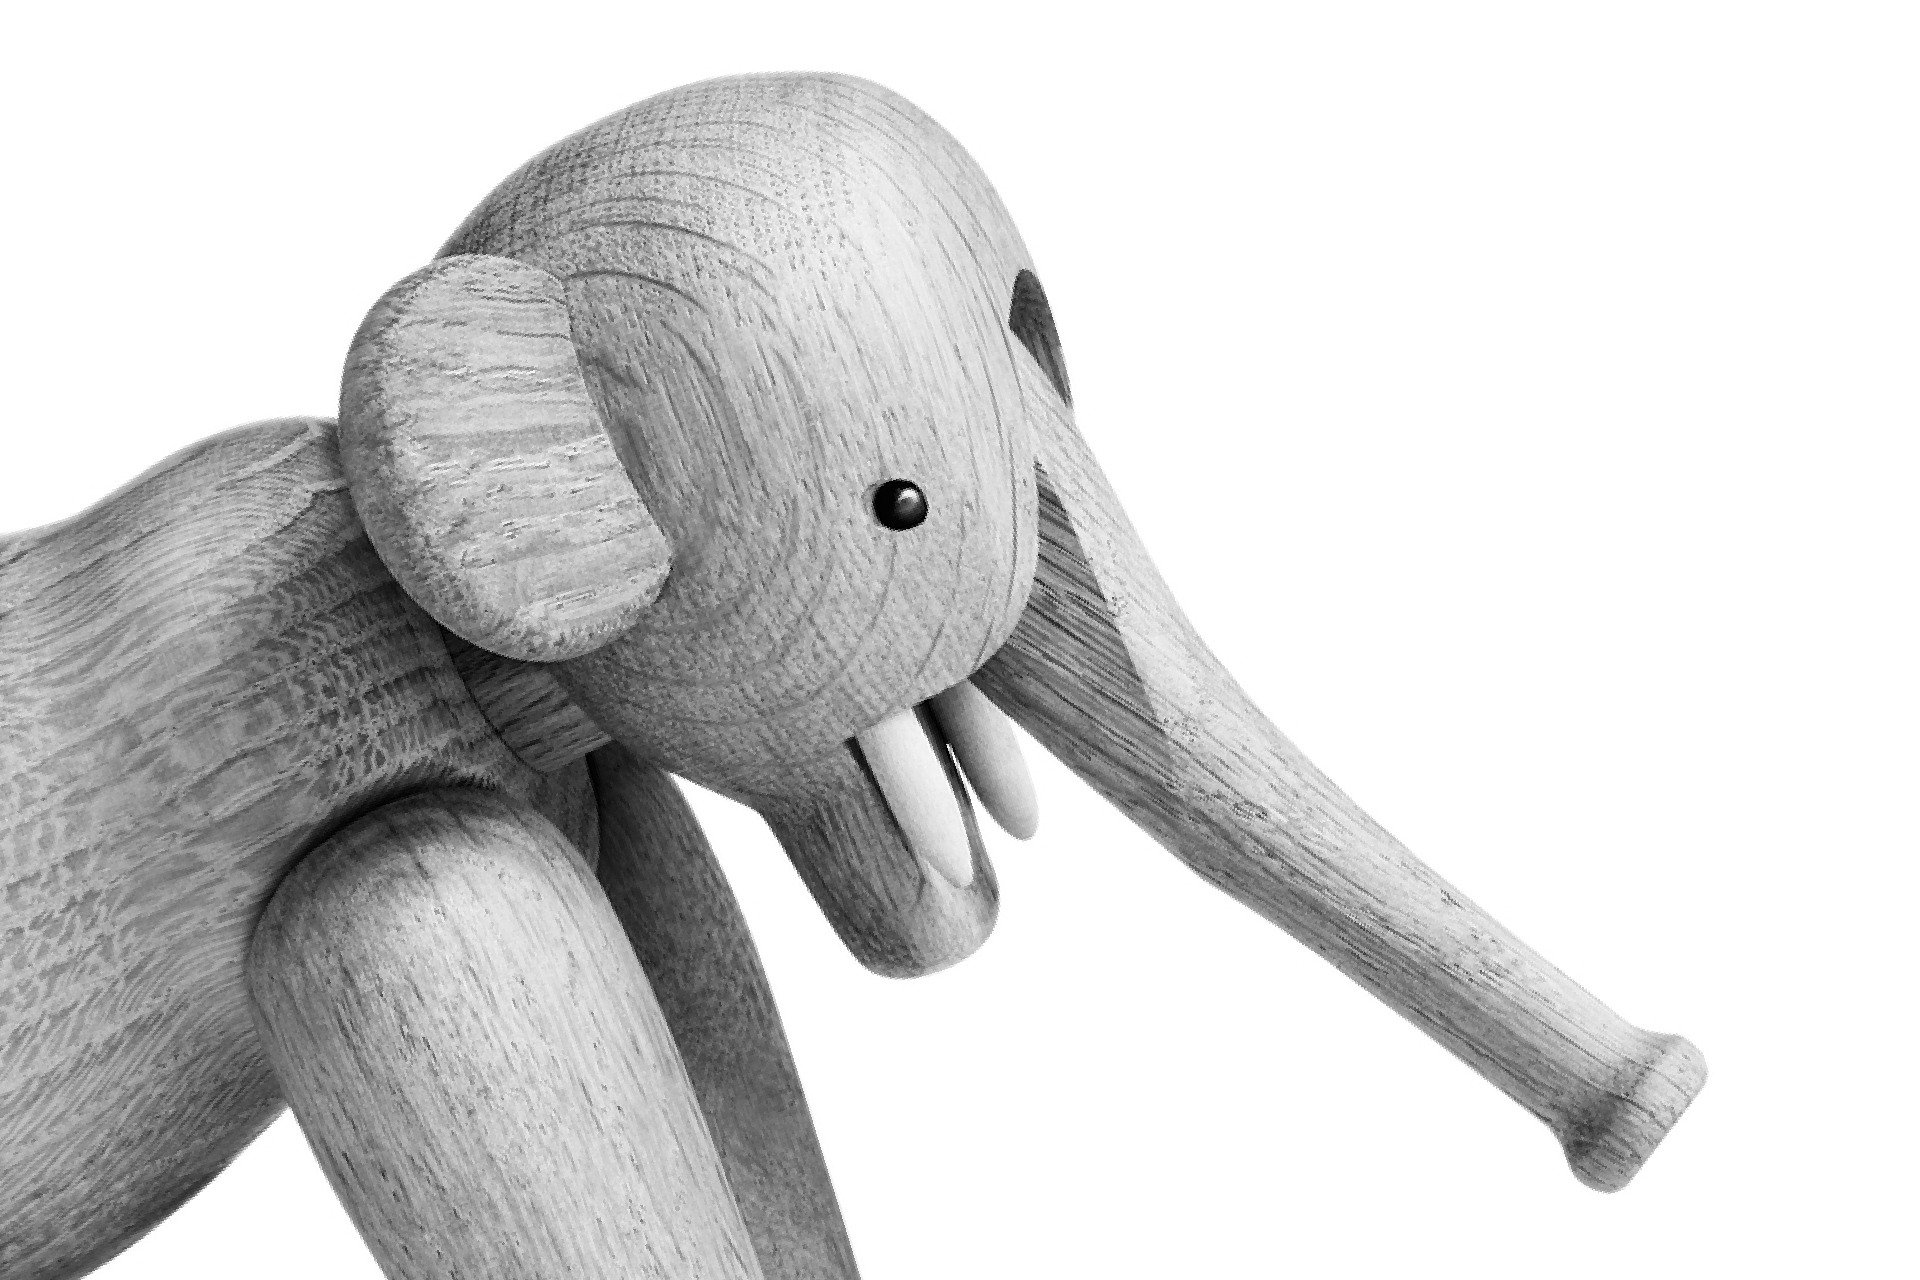 Elephant in oak, design by Kay Bojesen